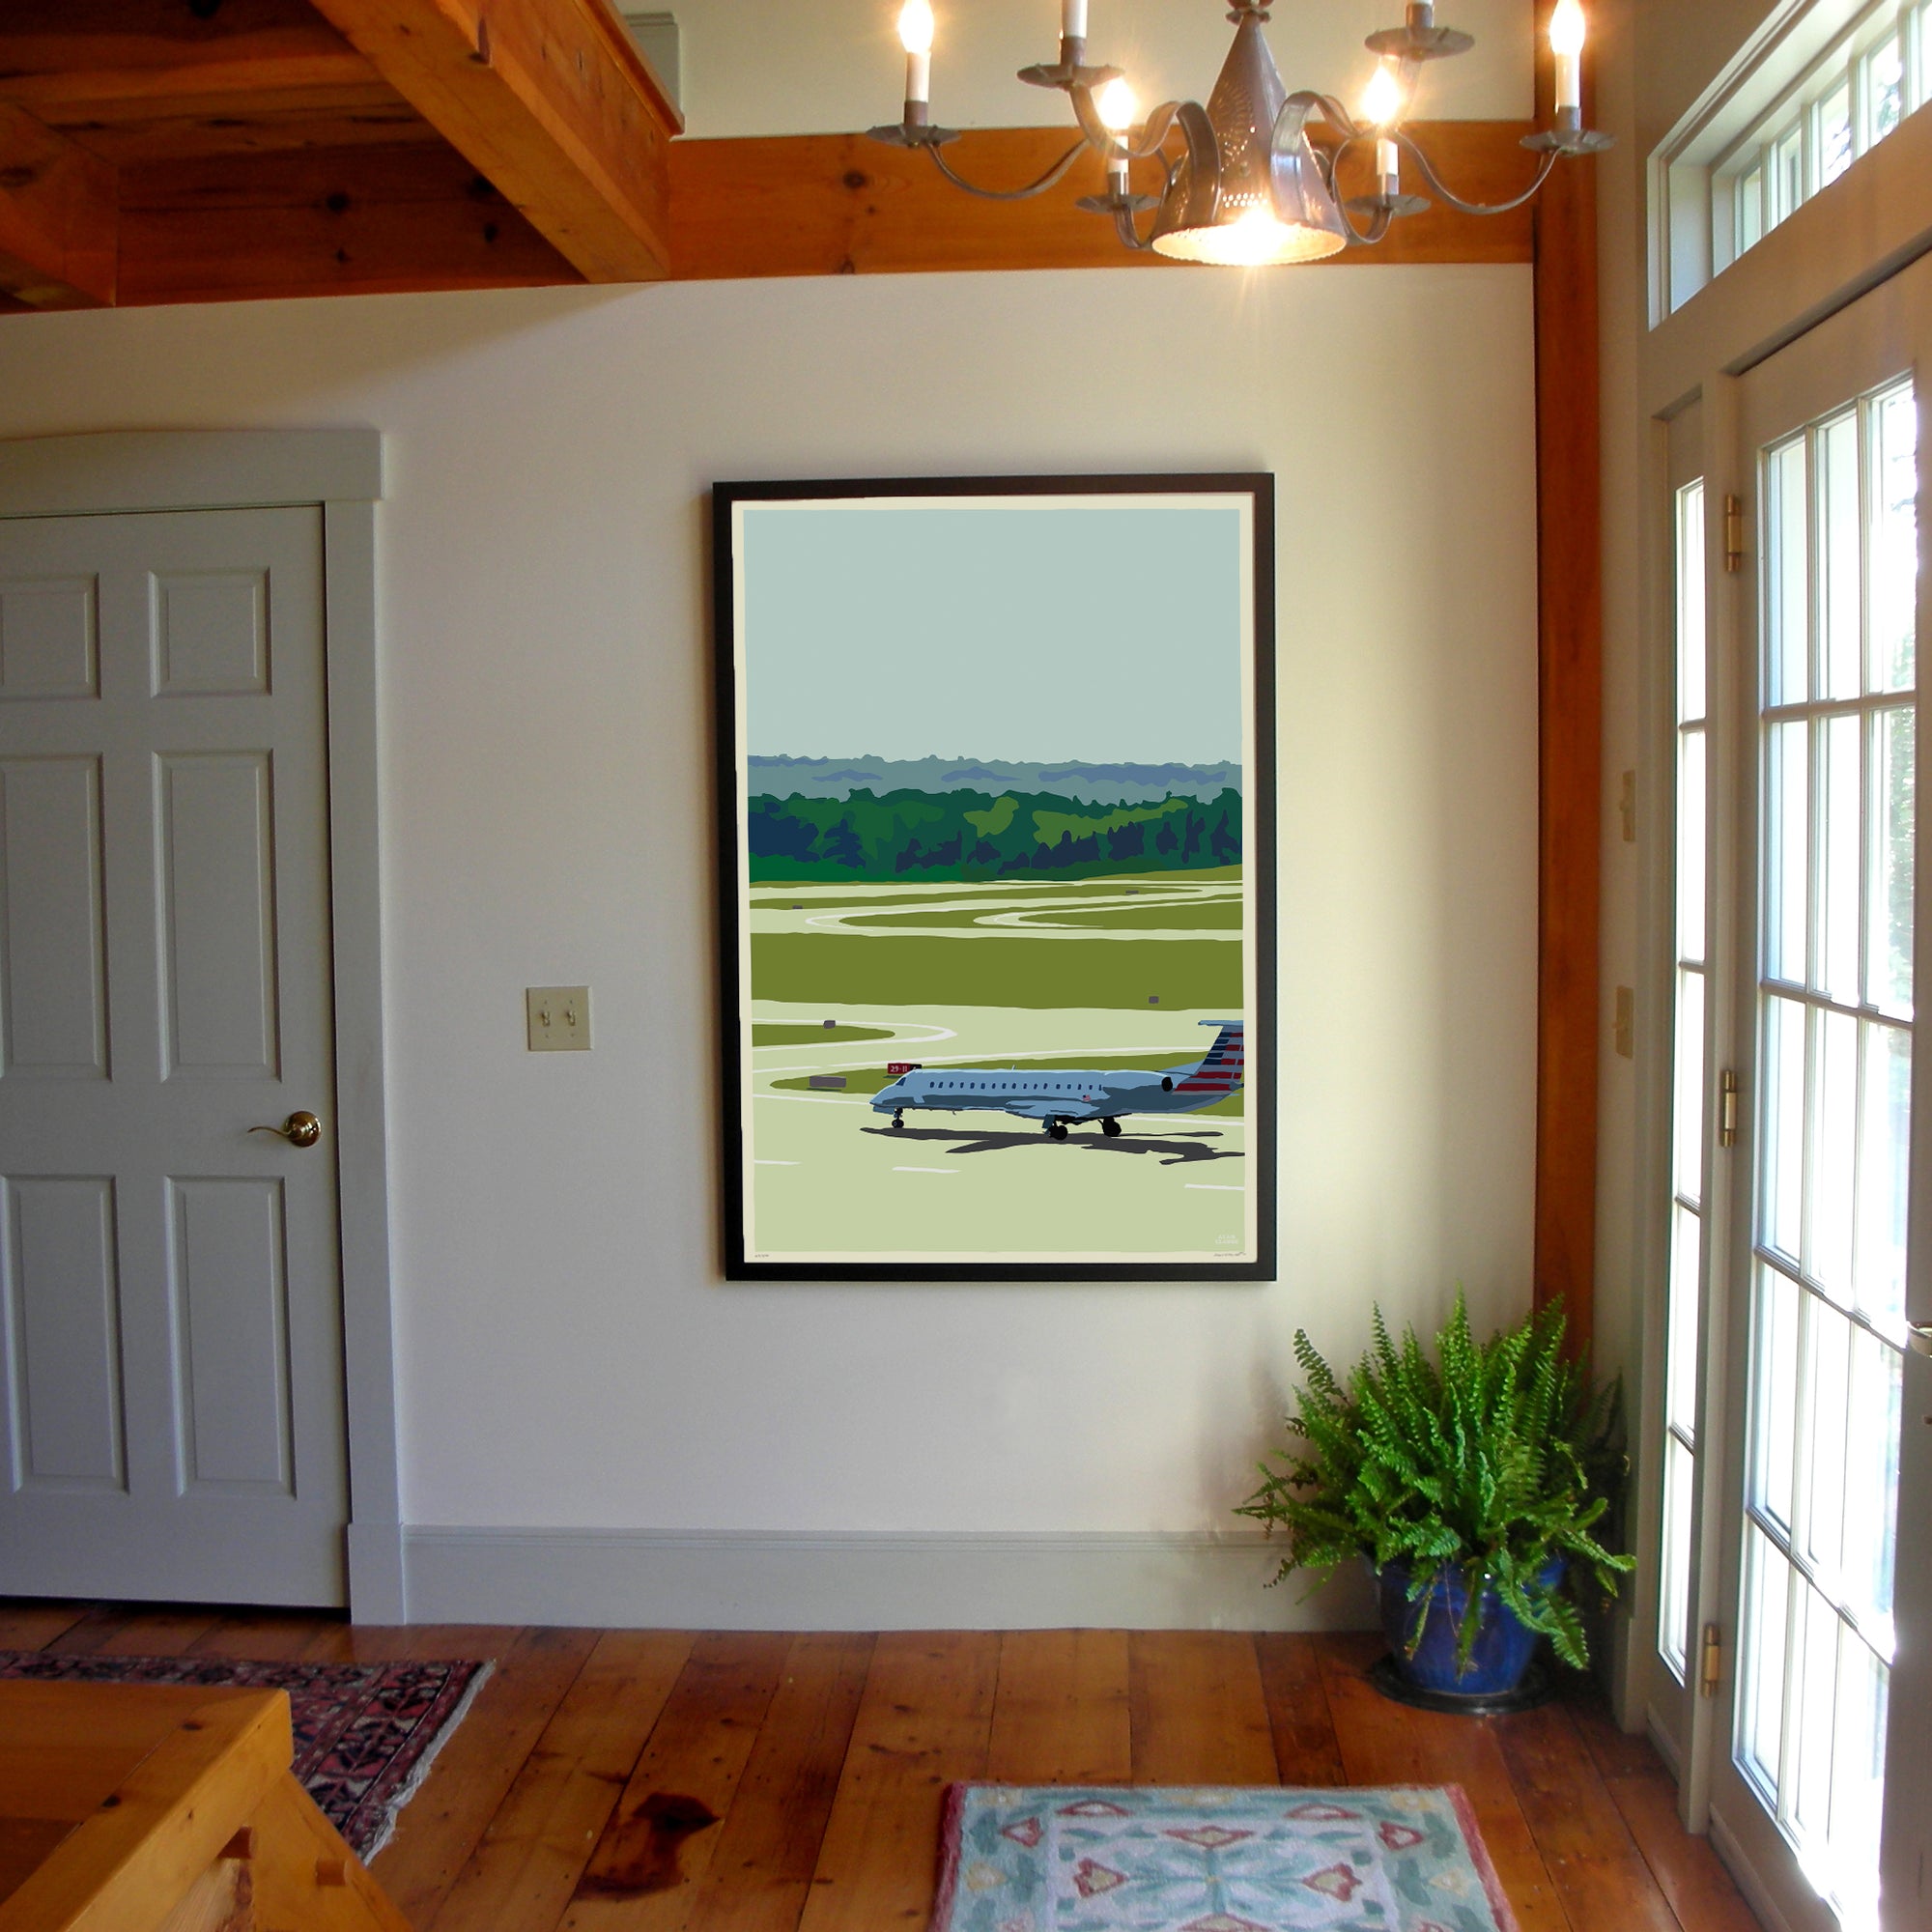 Jetport Art Print 36" x 53" Framed Wall Poster By Alan Claude - Maine